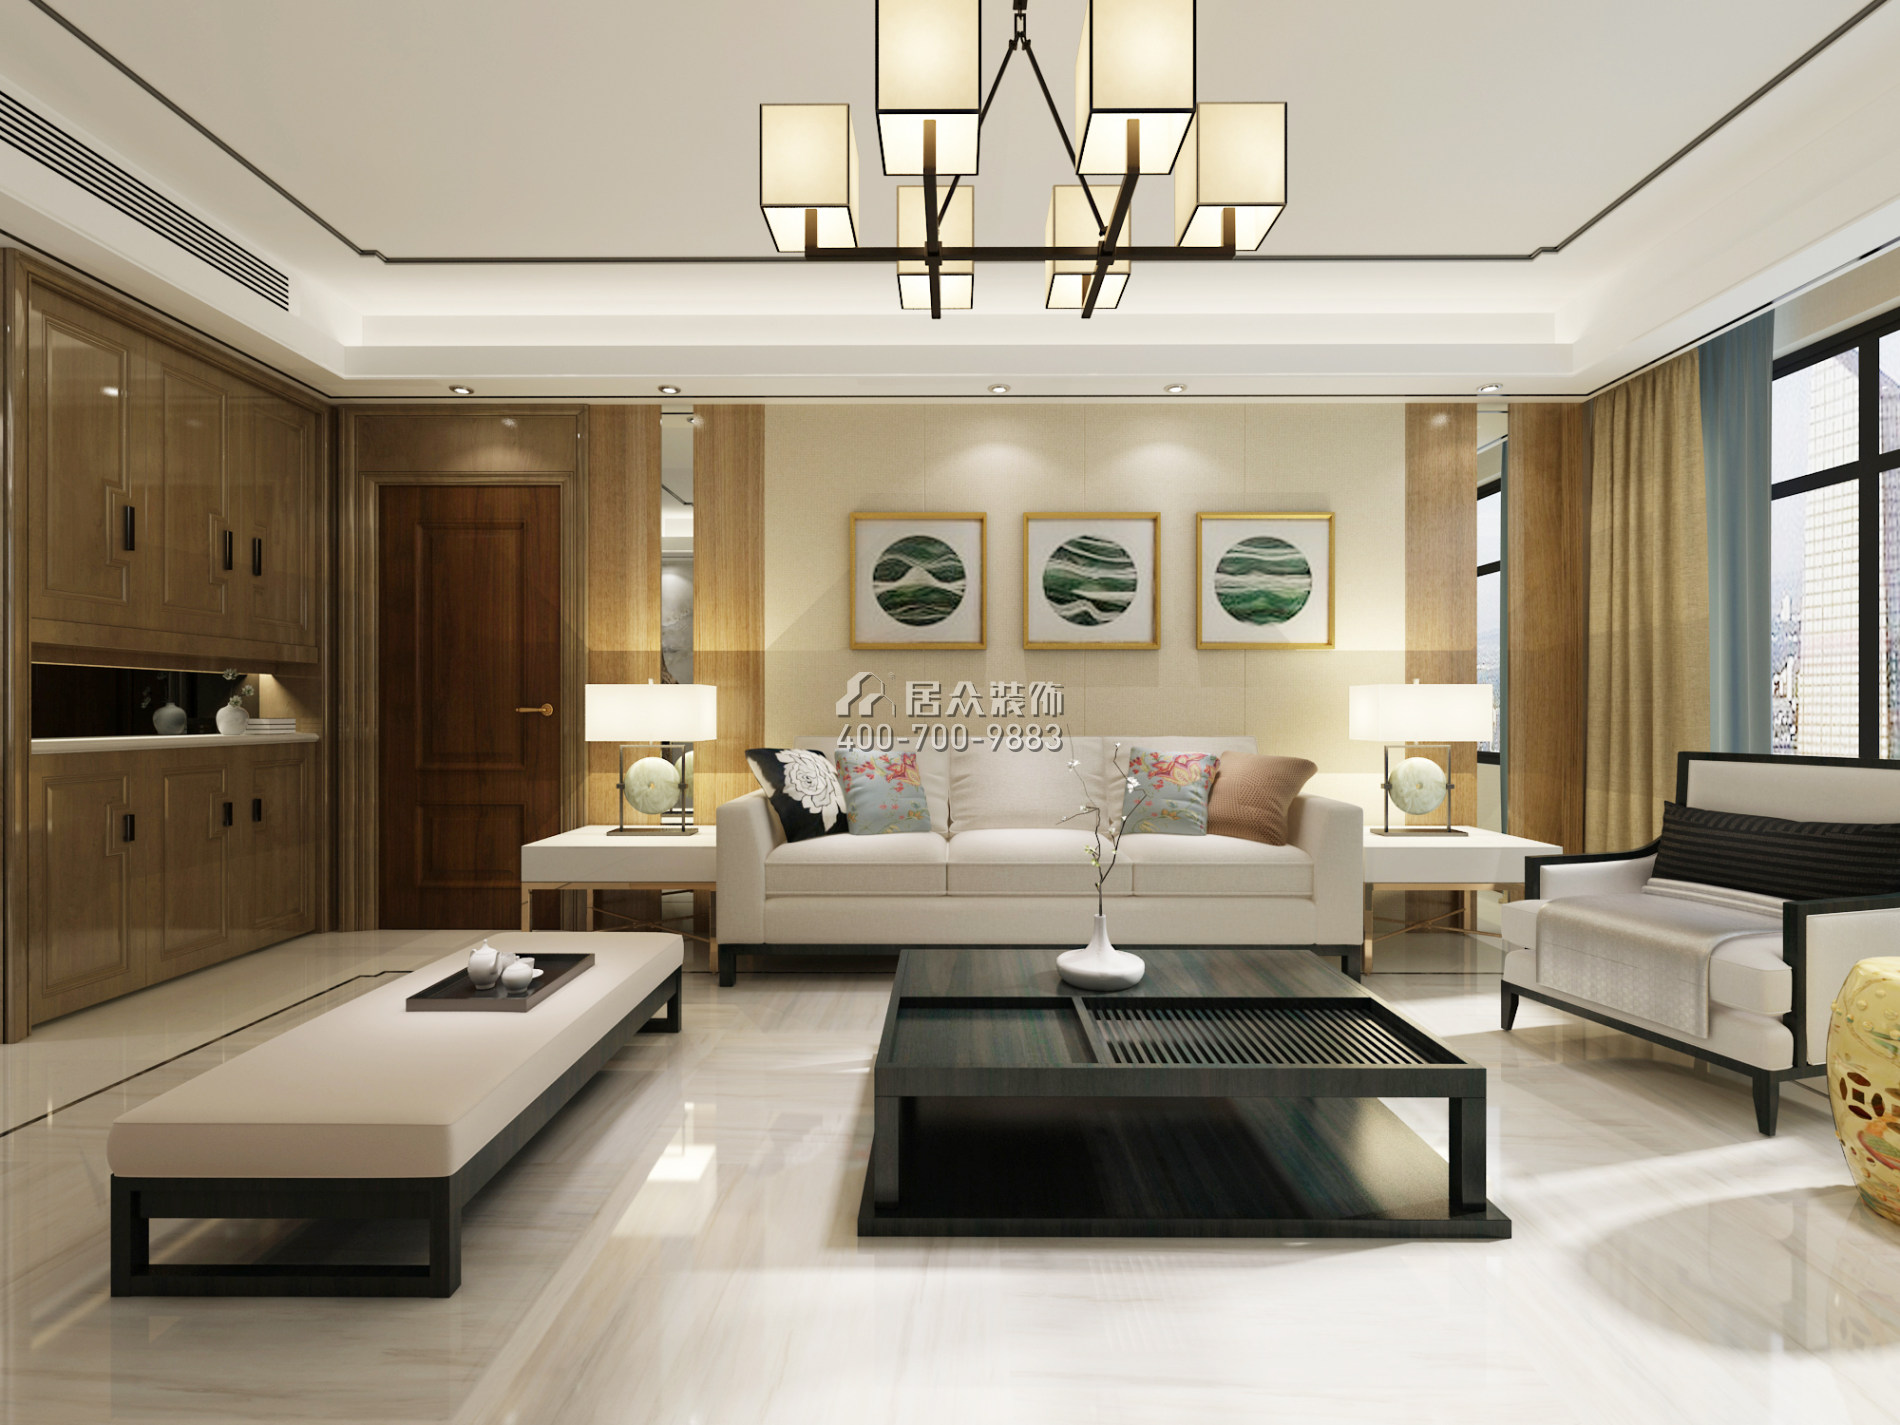 德景园159平方米中式风格平层户型客厅装修效果图